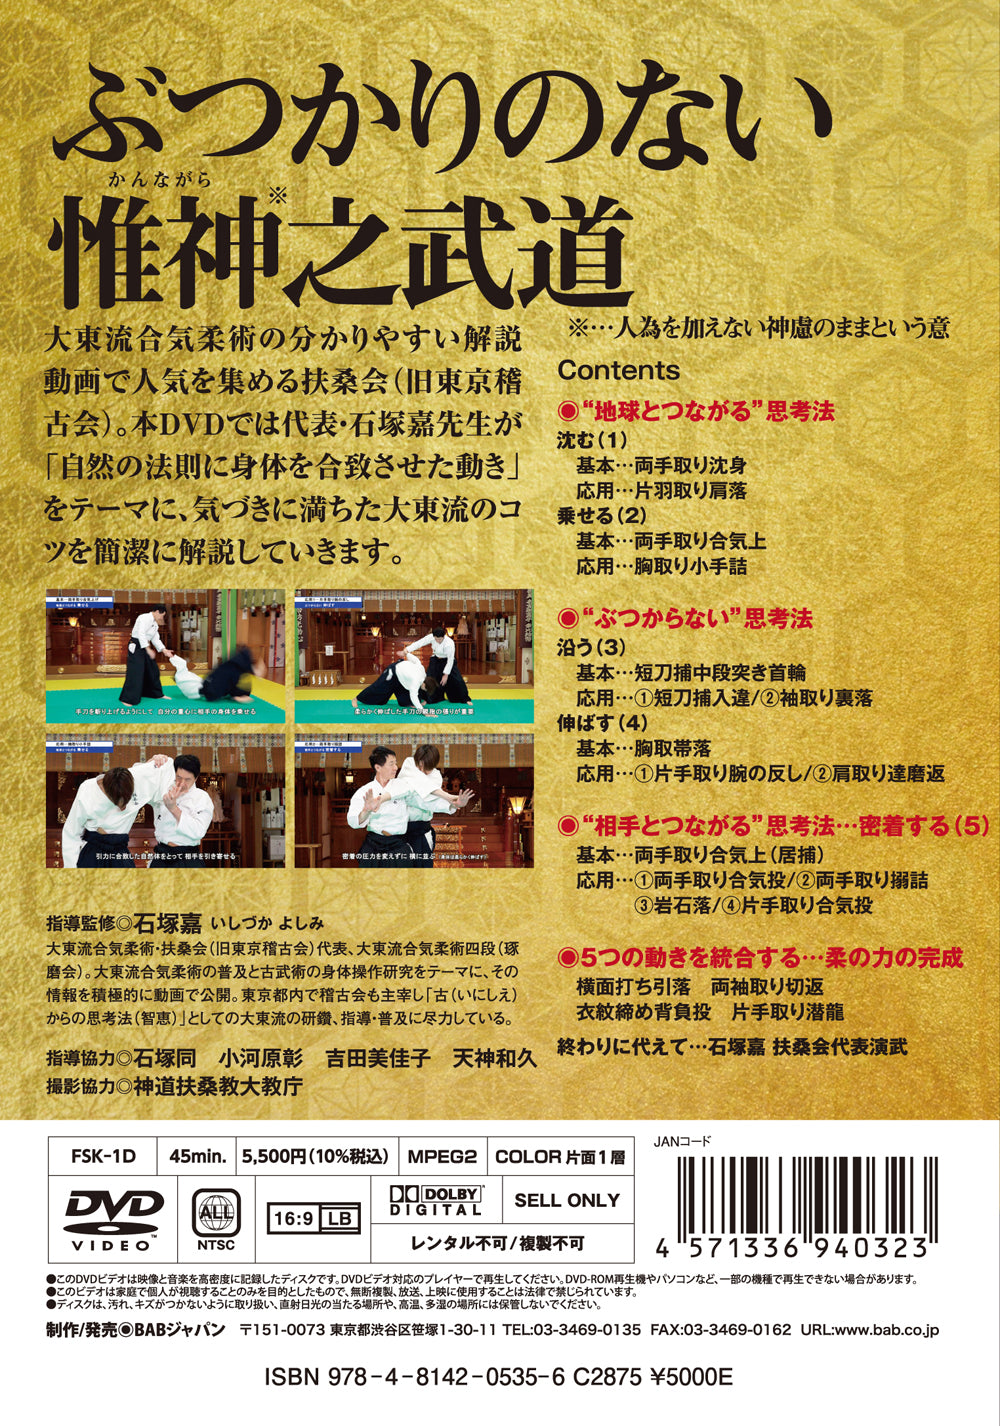 The Essence of Kobujutsu in Daito Ryu Aikijujutsu DVD by Yoshimi Ishizuka